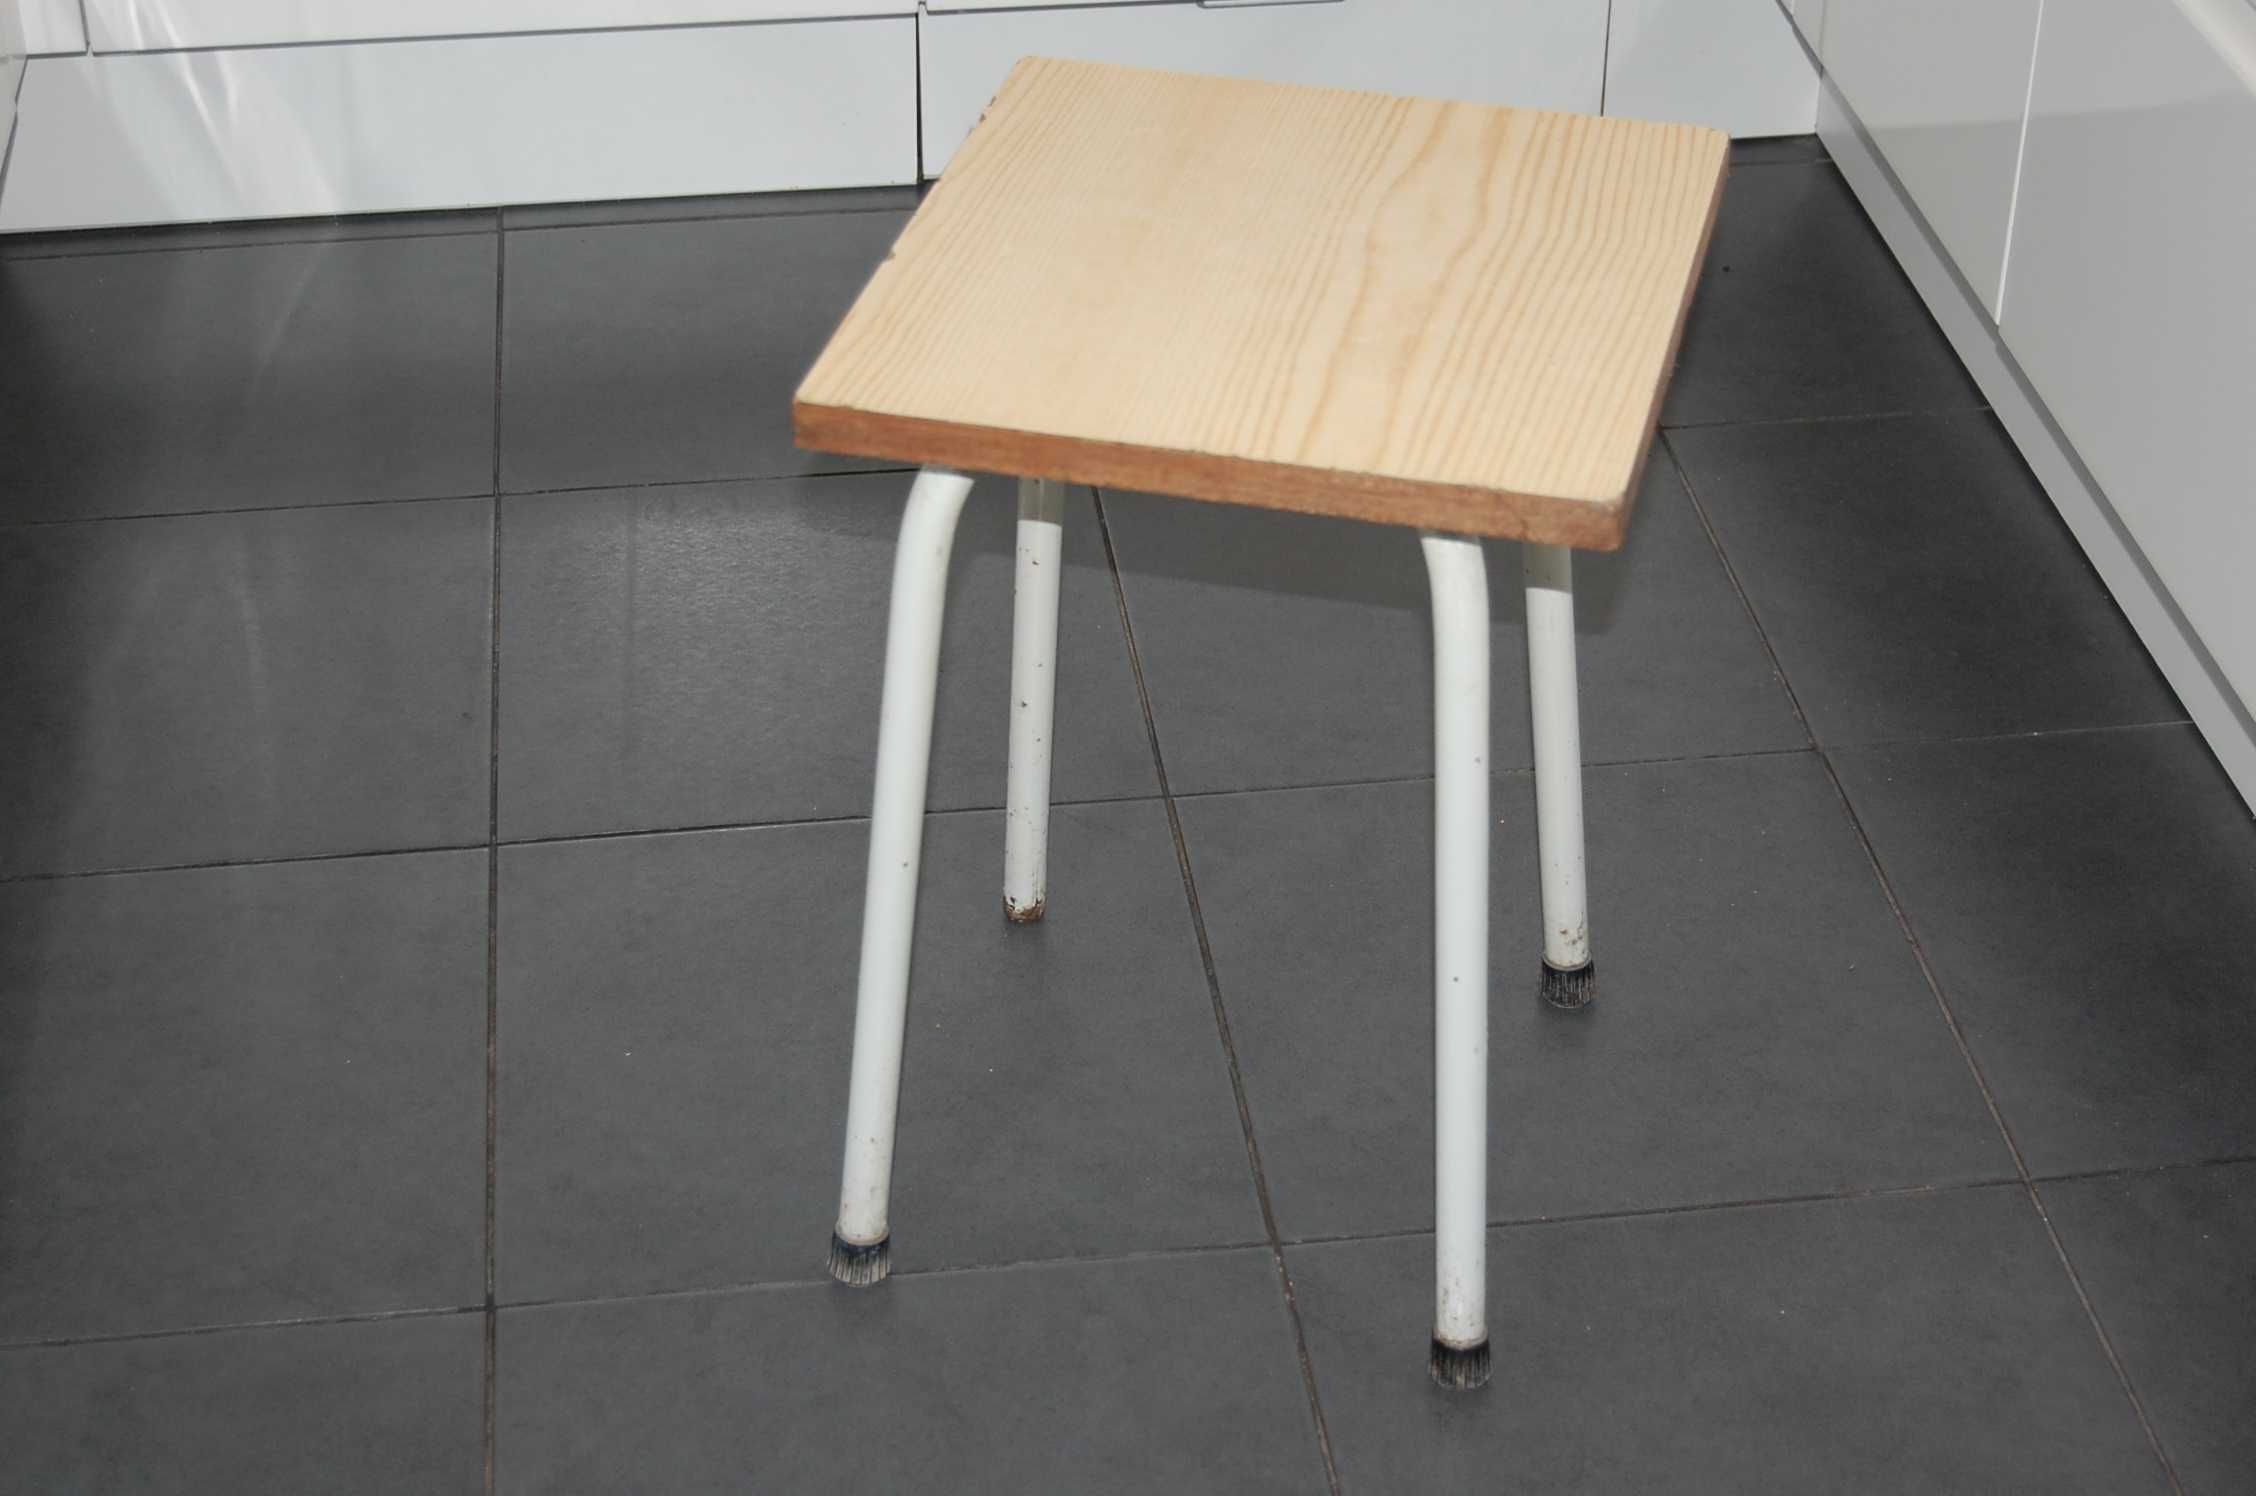 Taboret, stołek warsztatowy drewniano-metalowy - PRL